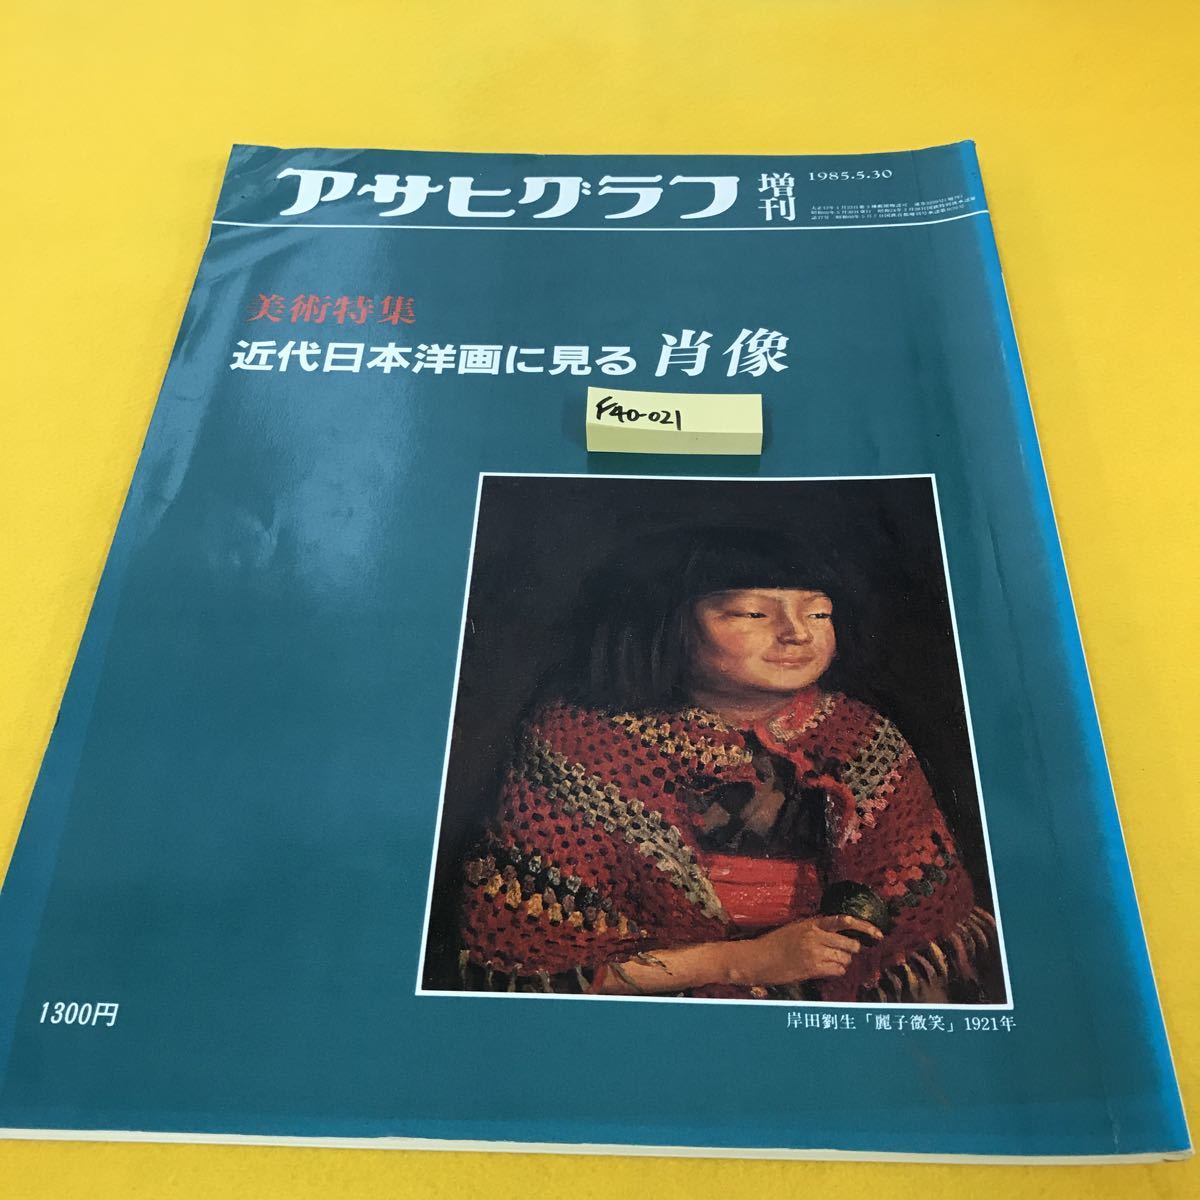 F40-021 アサヒグラフ 増刊 美術特集 近代日本洋画に見る肖像 朝日新聞社